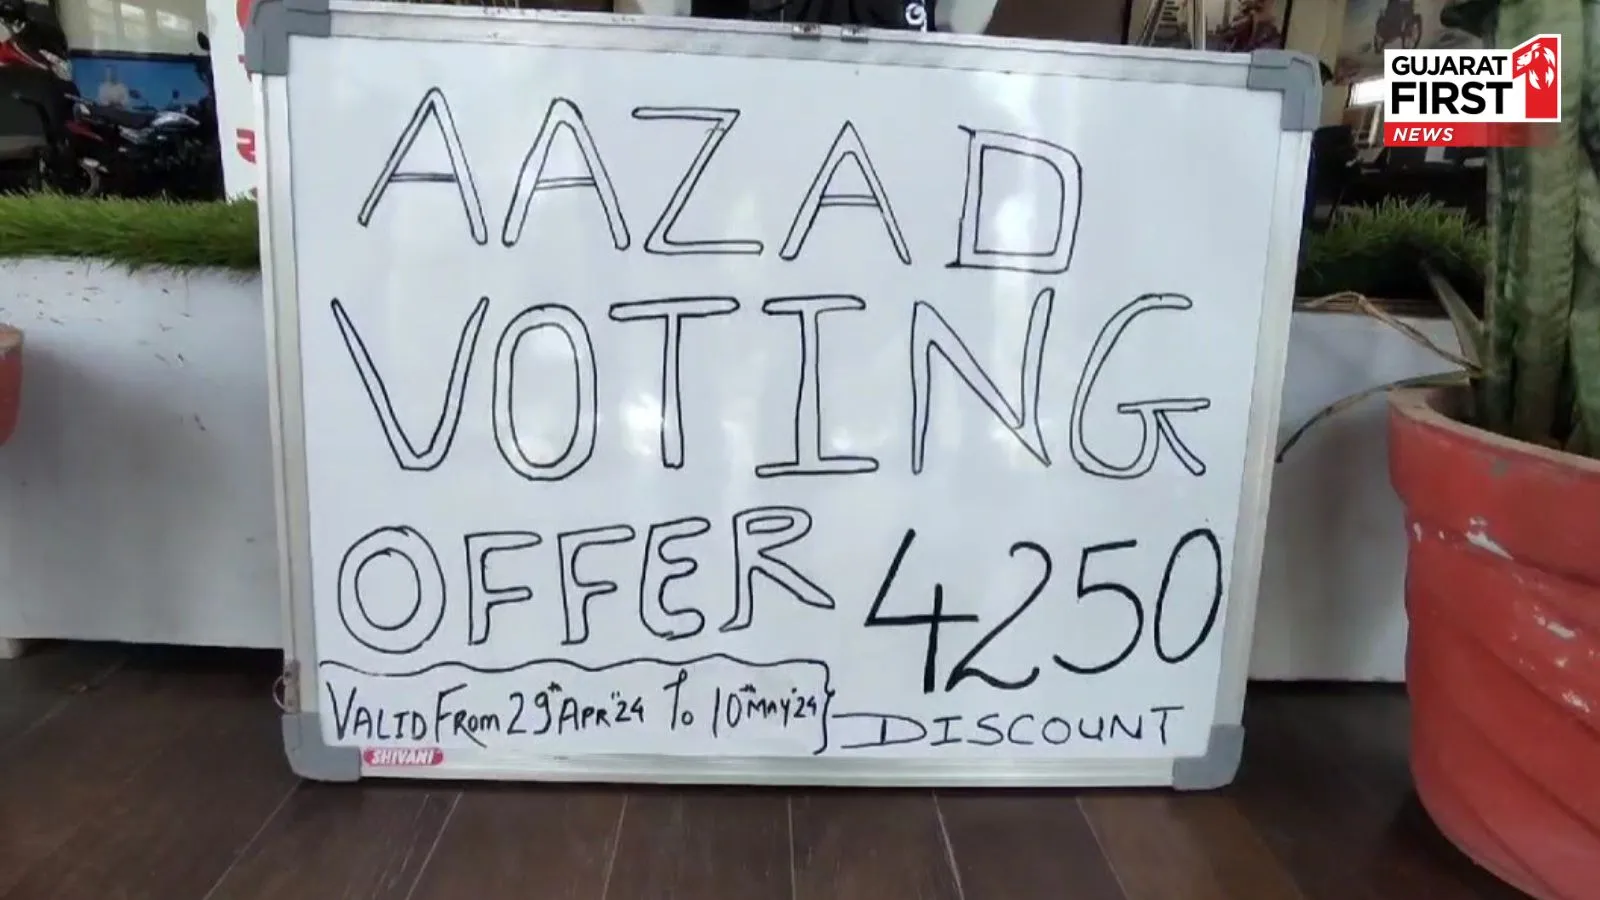 Aazad Voting Offer in Dahod